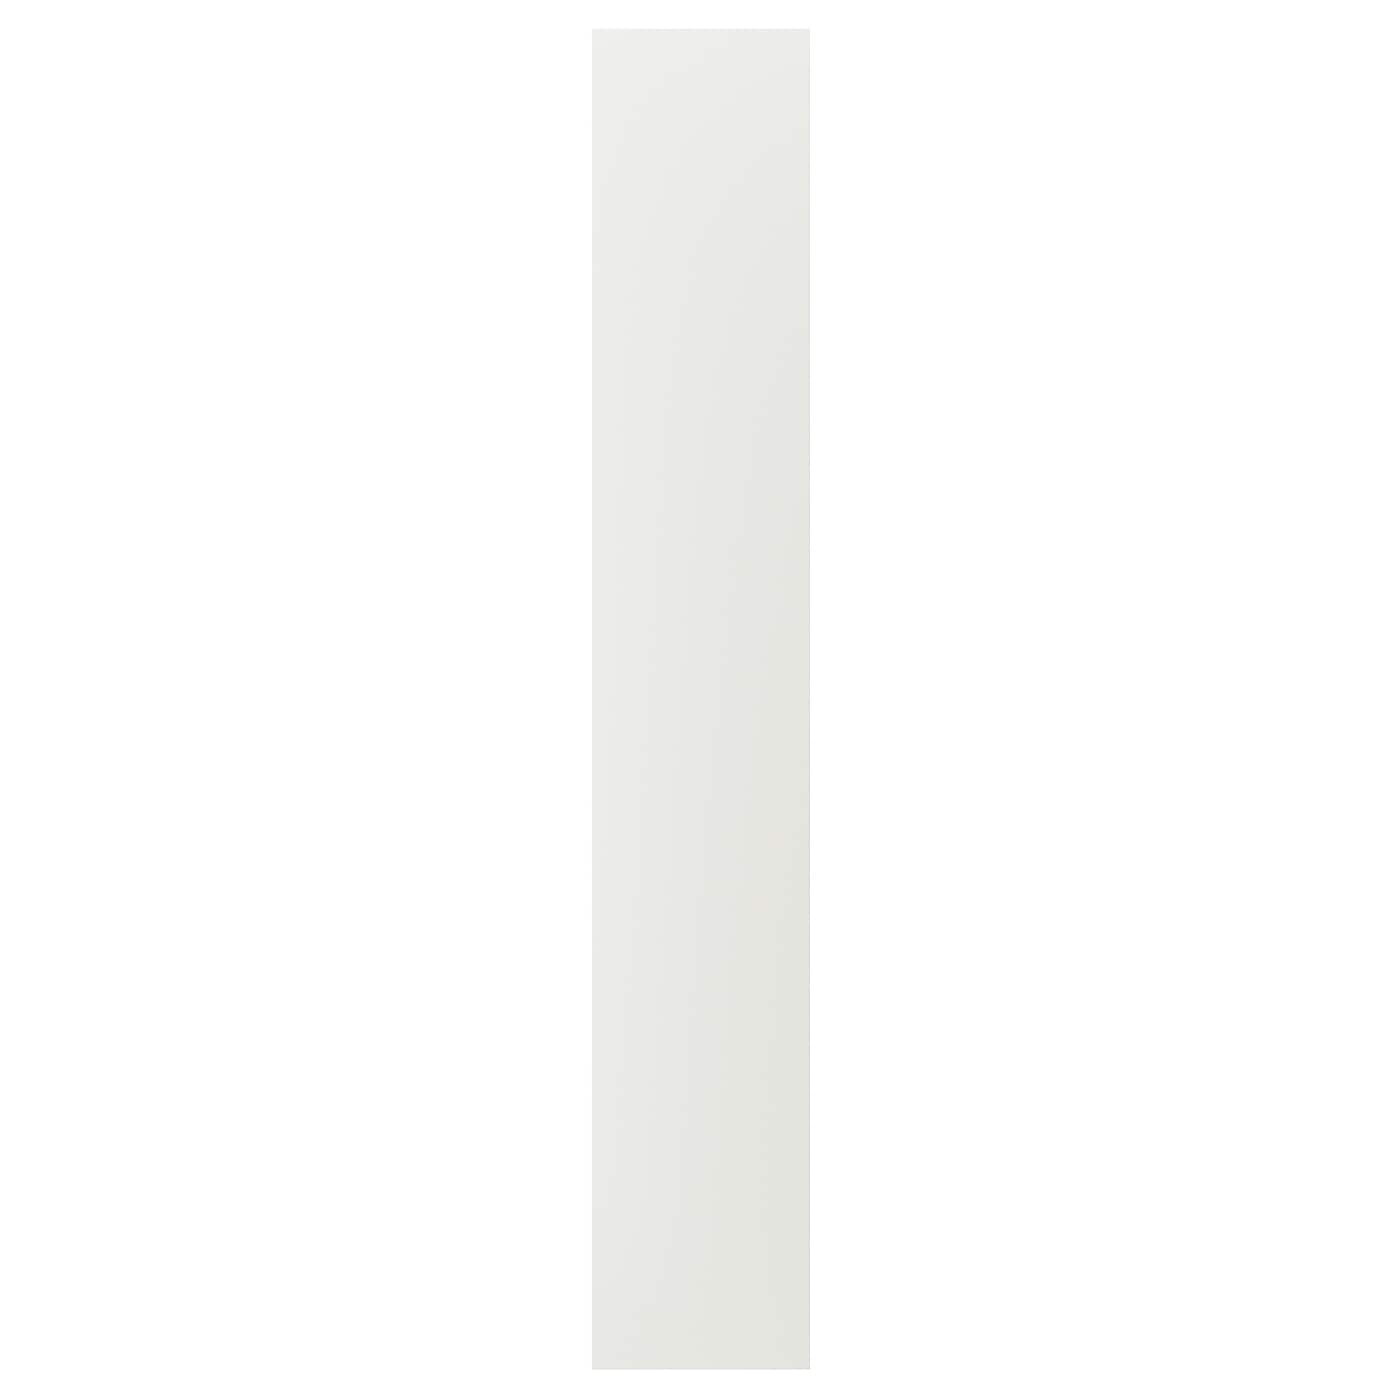 Накладная панель - IKEA STENSUND, 240х39 см, белый, СТЕНСУНД ИКЕА